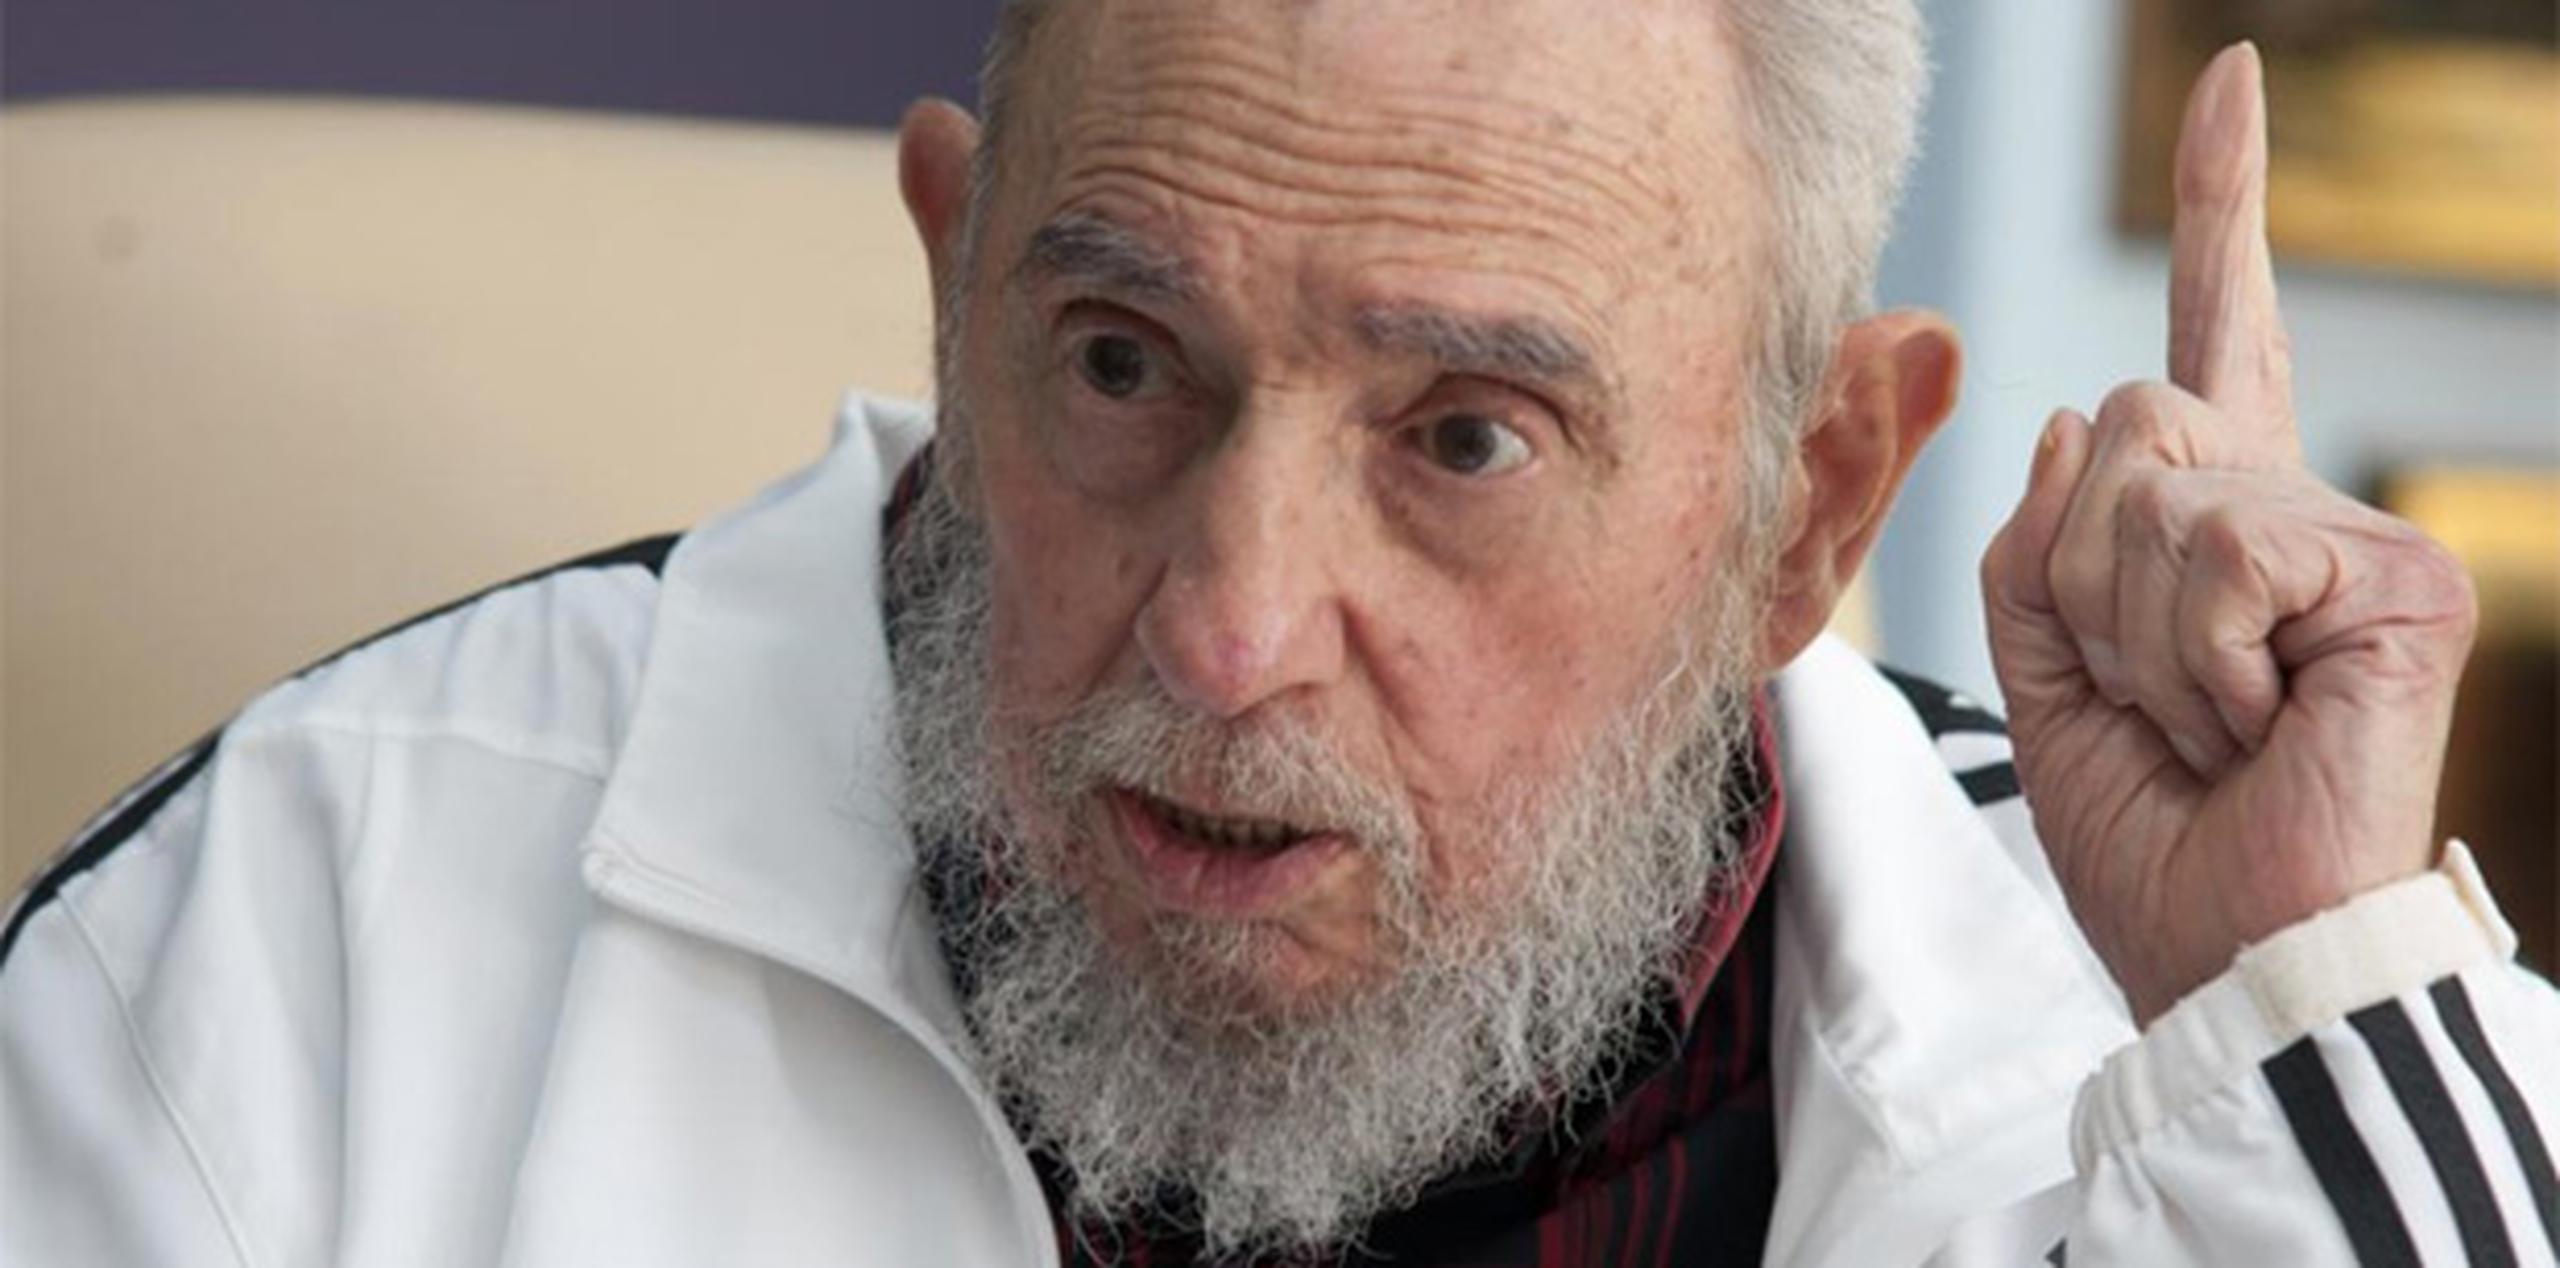 Castro de 88 años de edad se encuentra retirado del poder desde 2006. (AP)